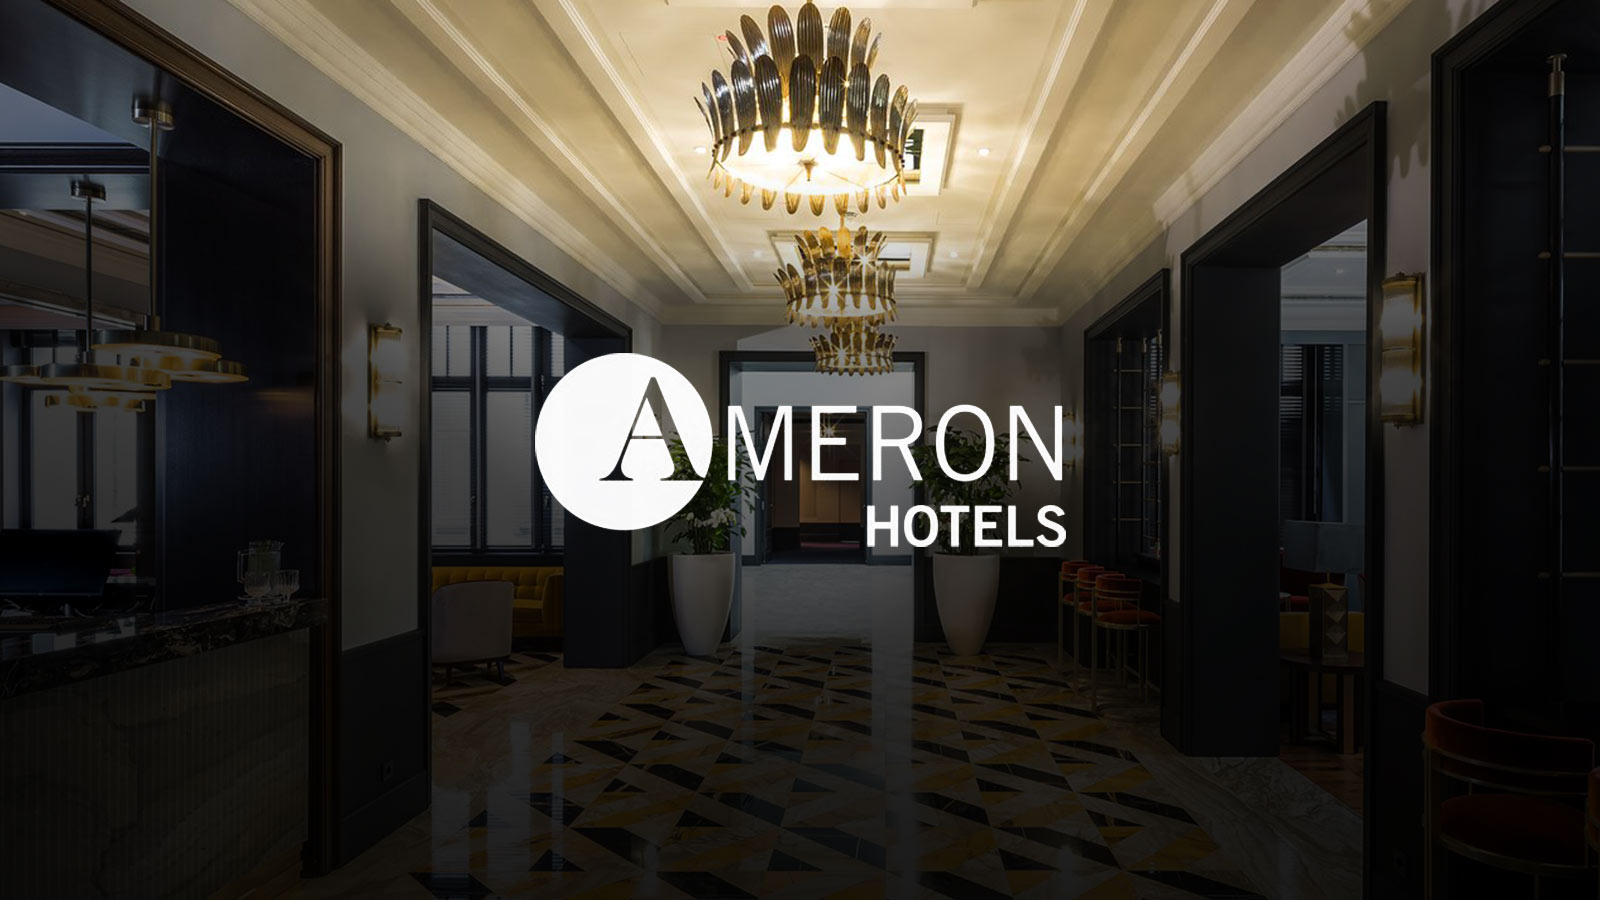 Ameron-Hotel-Neckarvillen-Frankfurt-logo